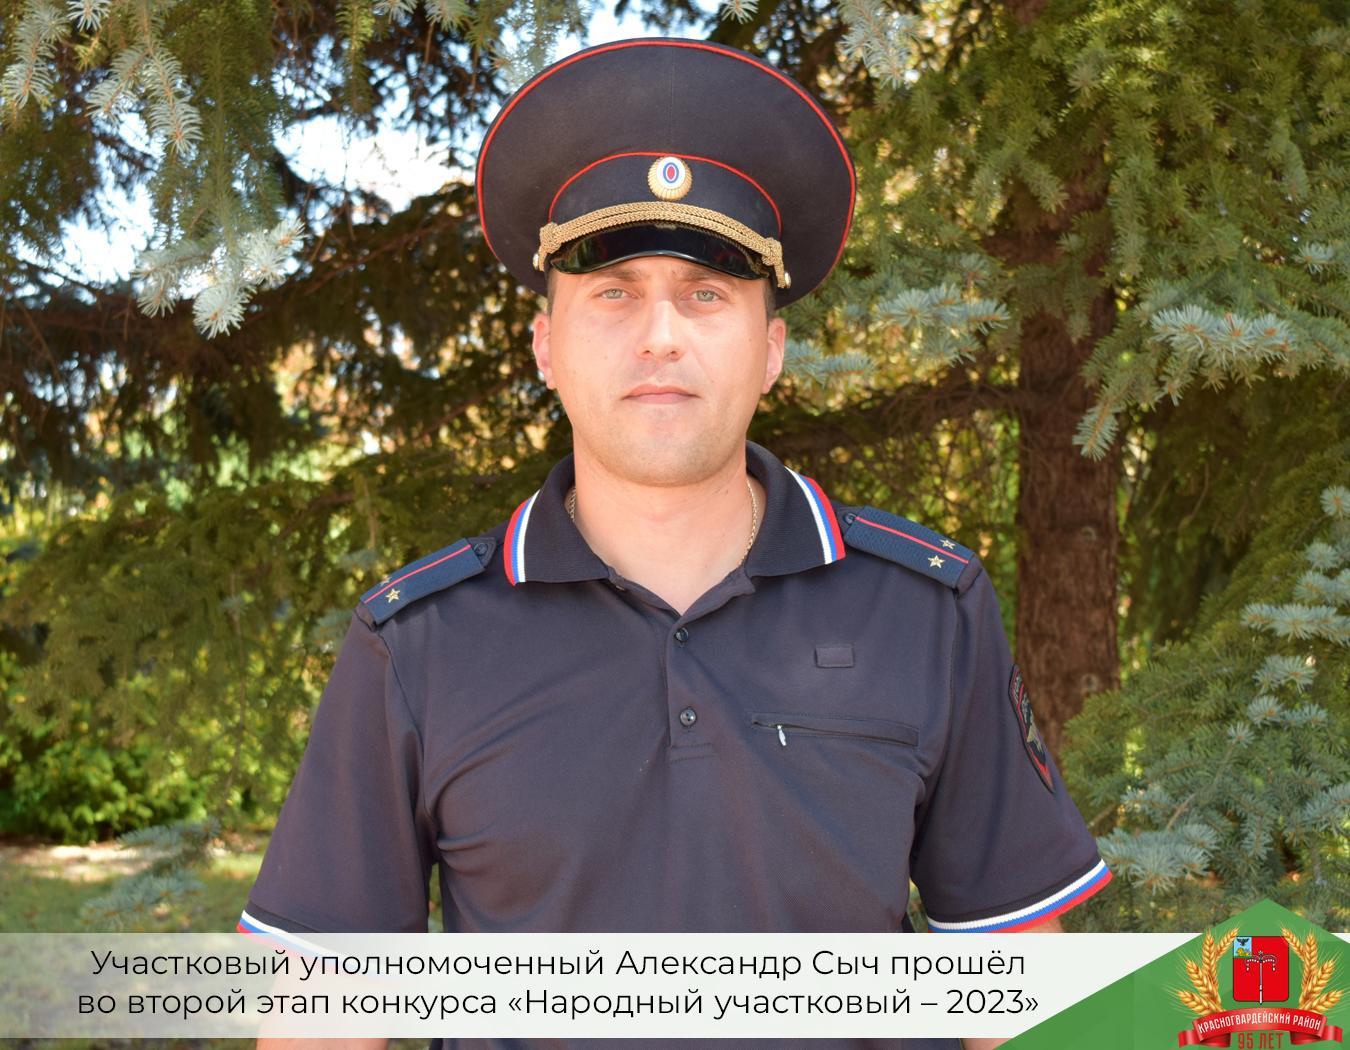 Участковый уполномоченный Александр Сыч прошёл во второй этап конкурса «Народный участковый – 2023».